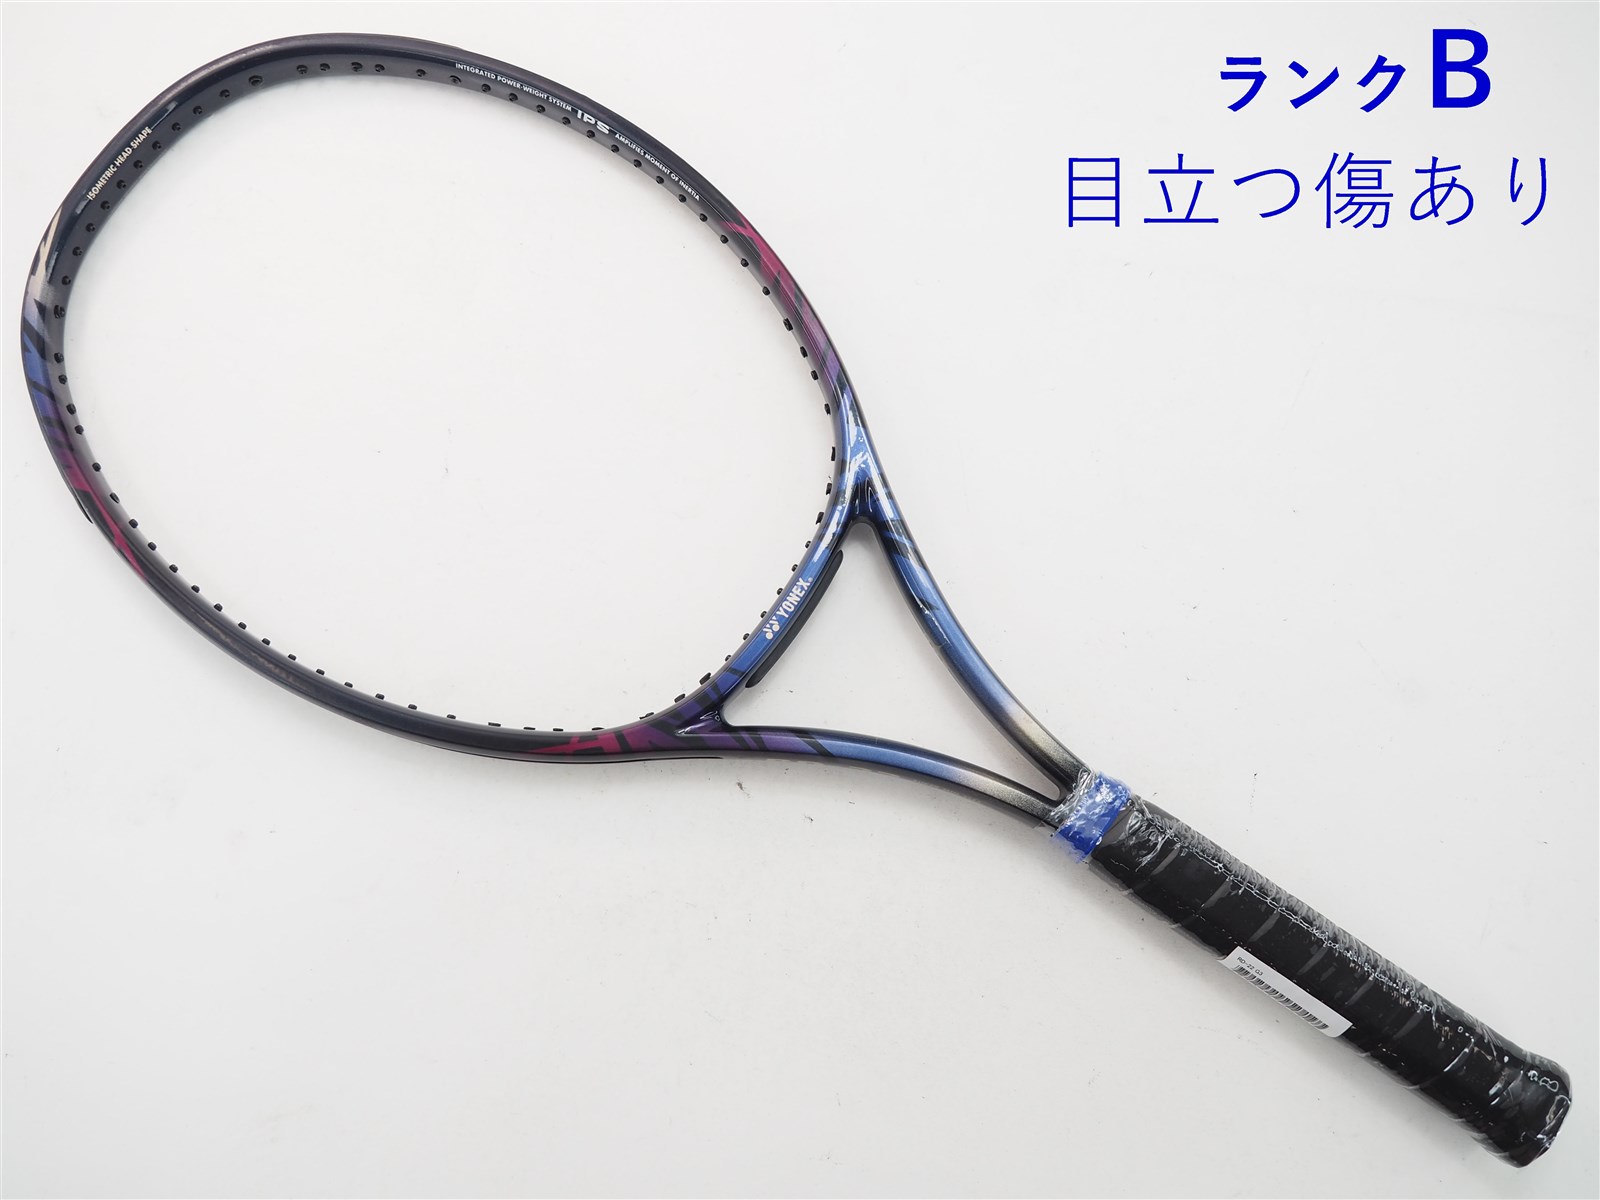 硬式テニスラケット ヨネックス RD-8 伊達公子使用モデル - テニス